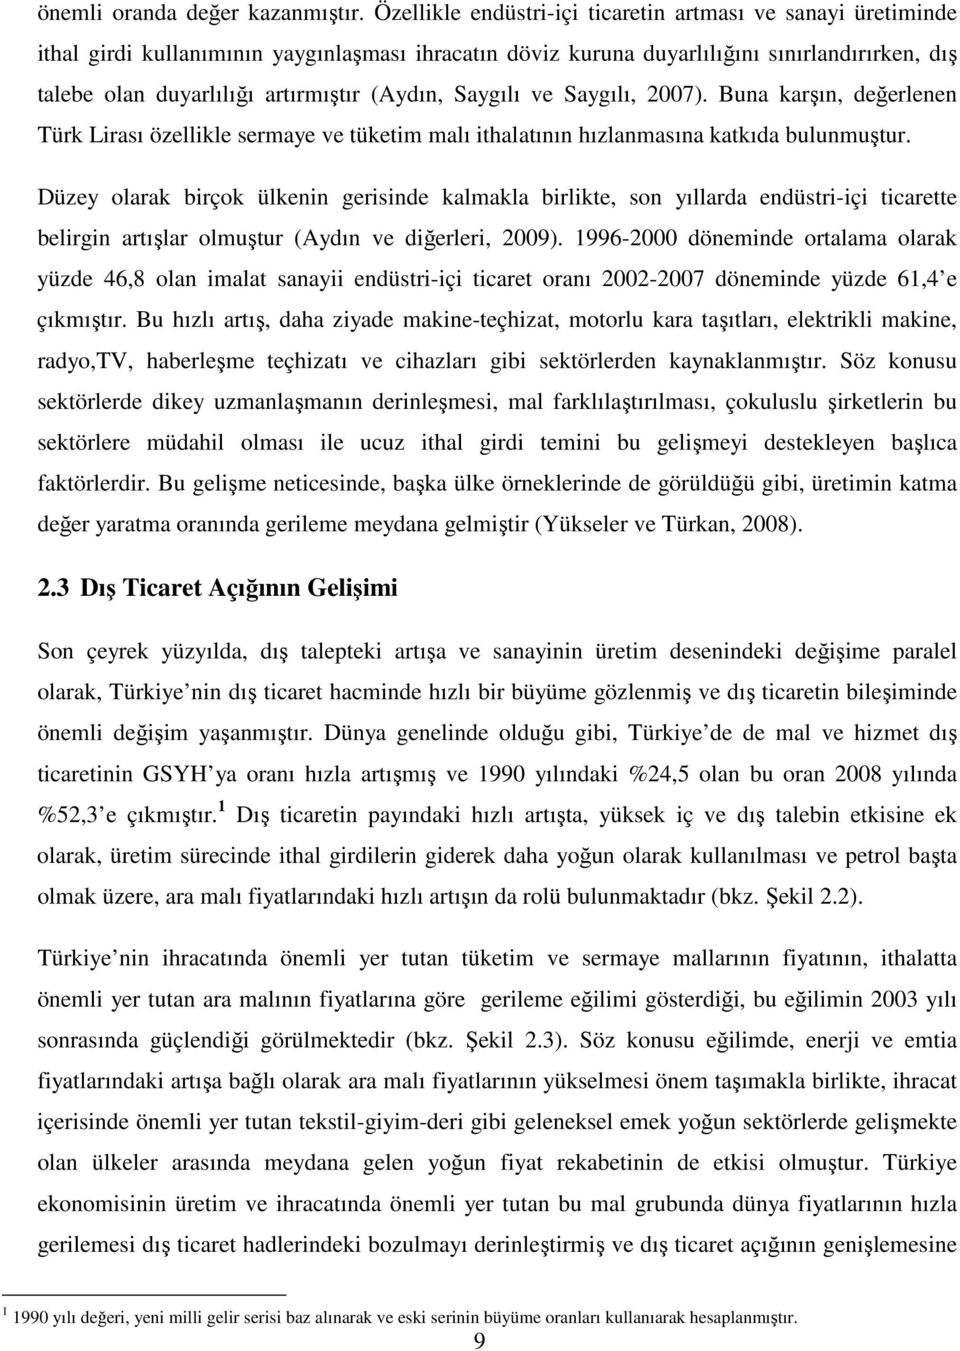 (Aydın, Saygılı ve Saygılı, 2007). Buna karşın, değerlenen Türk Lirası özellikle sermaye ve tüketim malı ithalatının hızlanmasına katkıda bulunmuştur.